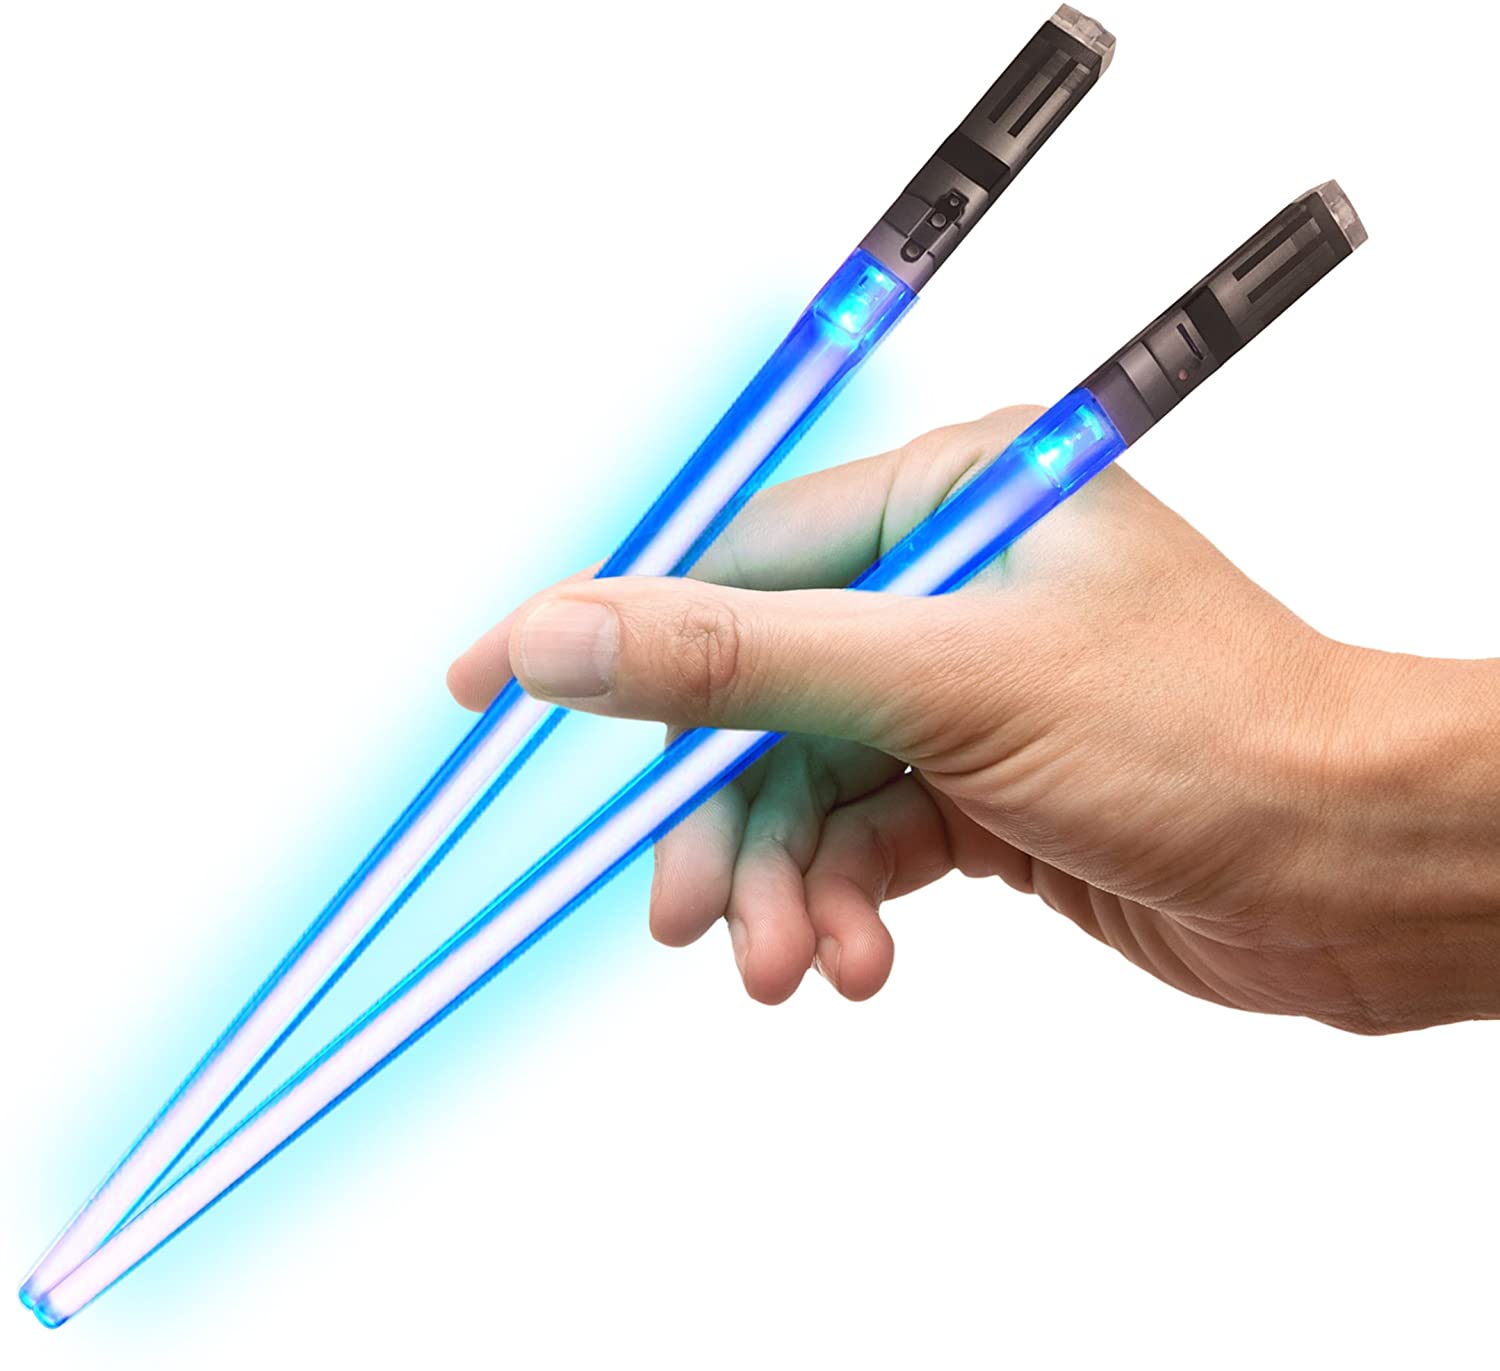 Chop Sabers - A pair of Lightsaber Chopsticks